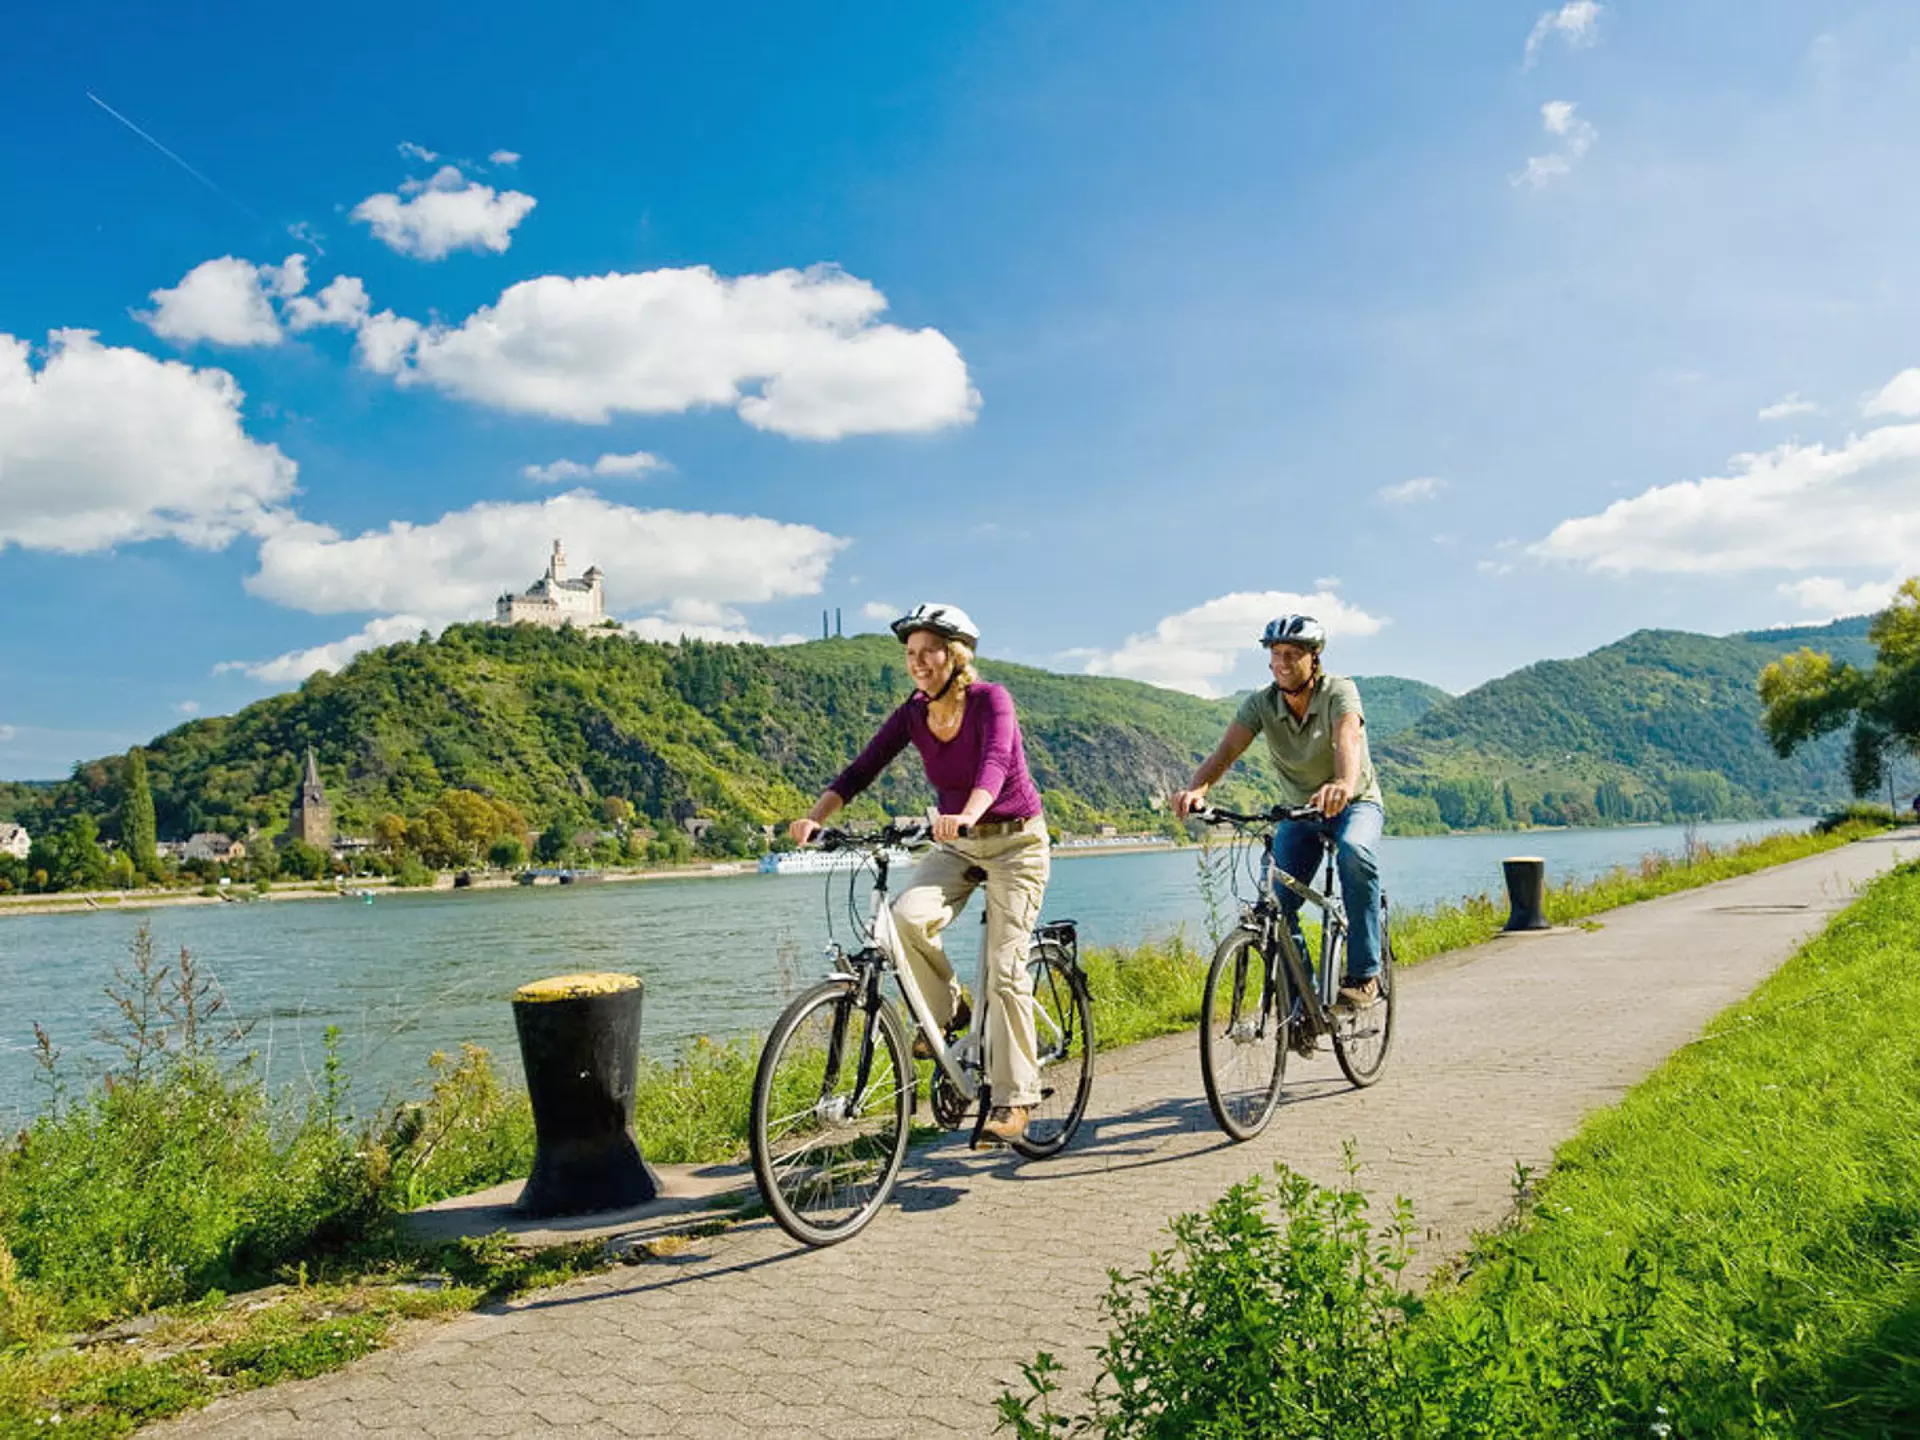 Urlaub an Flüssen und Seen: mit dem Fahrrad auf dem Rheinradweg unterwegs